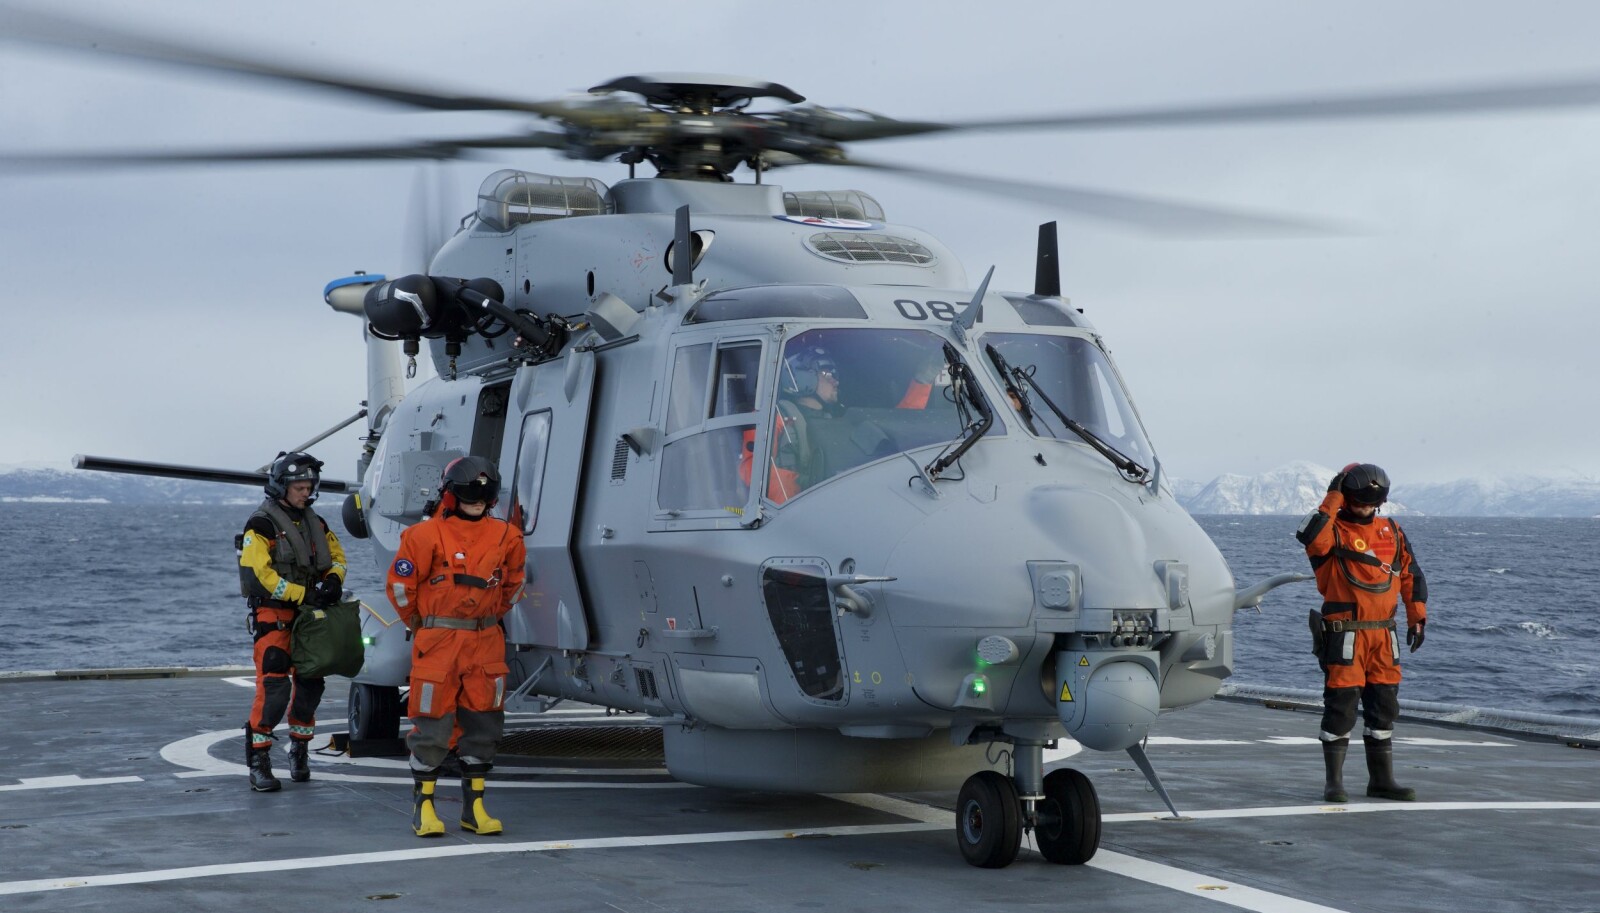 NH-90: Maud har plass til to helikoptre av typen NH-90. Bildet viser et NH-90 helikopter som lander på kystvaktfartøyet KV Senja. NH-90 er et fregatt- og kystvakthelikopter, men p.t. har det for Norges del vært et skandalehelikopter. Riksrevisjonen har kritisert anskaffelsen i kraftige ordelag på grunn av forsinkelser og kostnadsoverskridelser. Det er også satt flere spørsmålstegn ved helikopterets evne til å fylle rollen som det er tiltenkt.